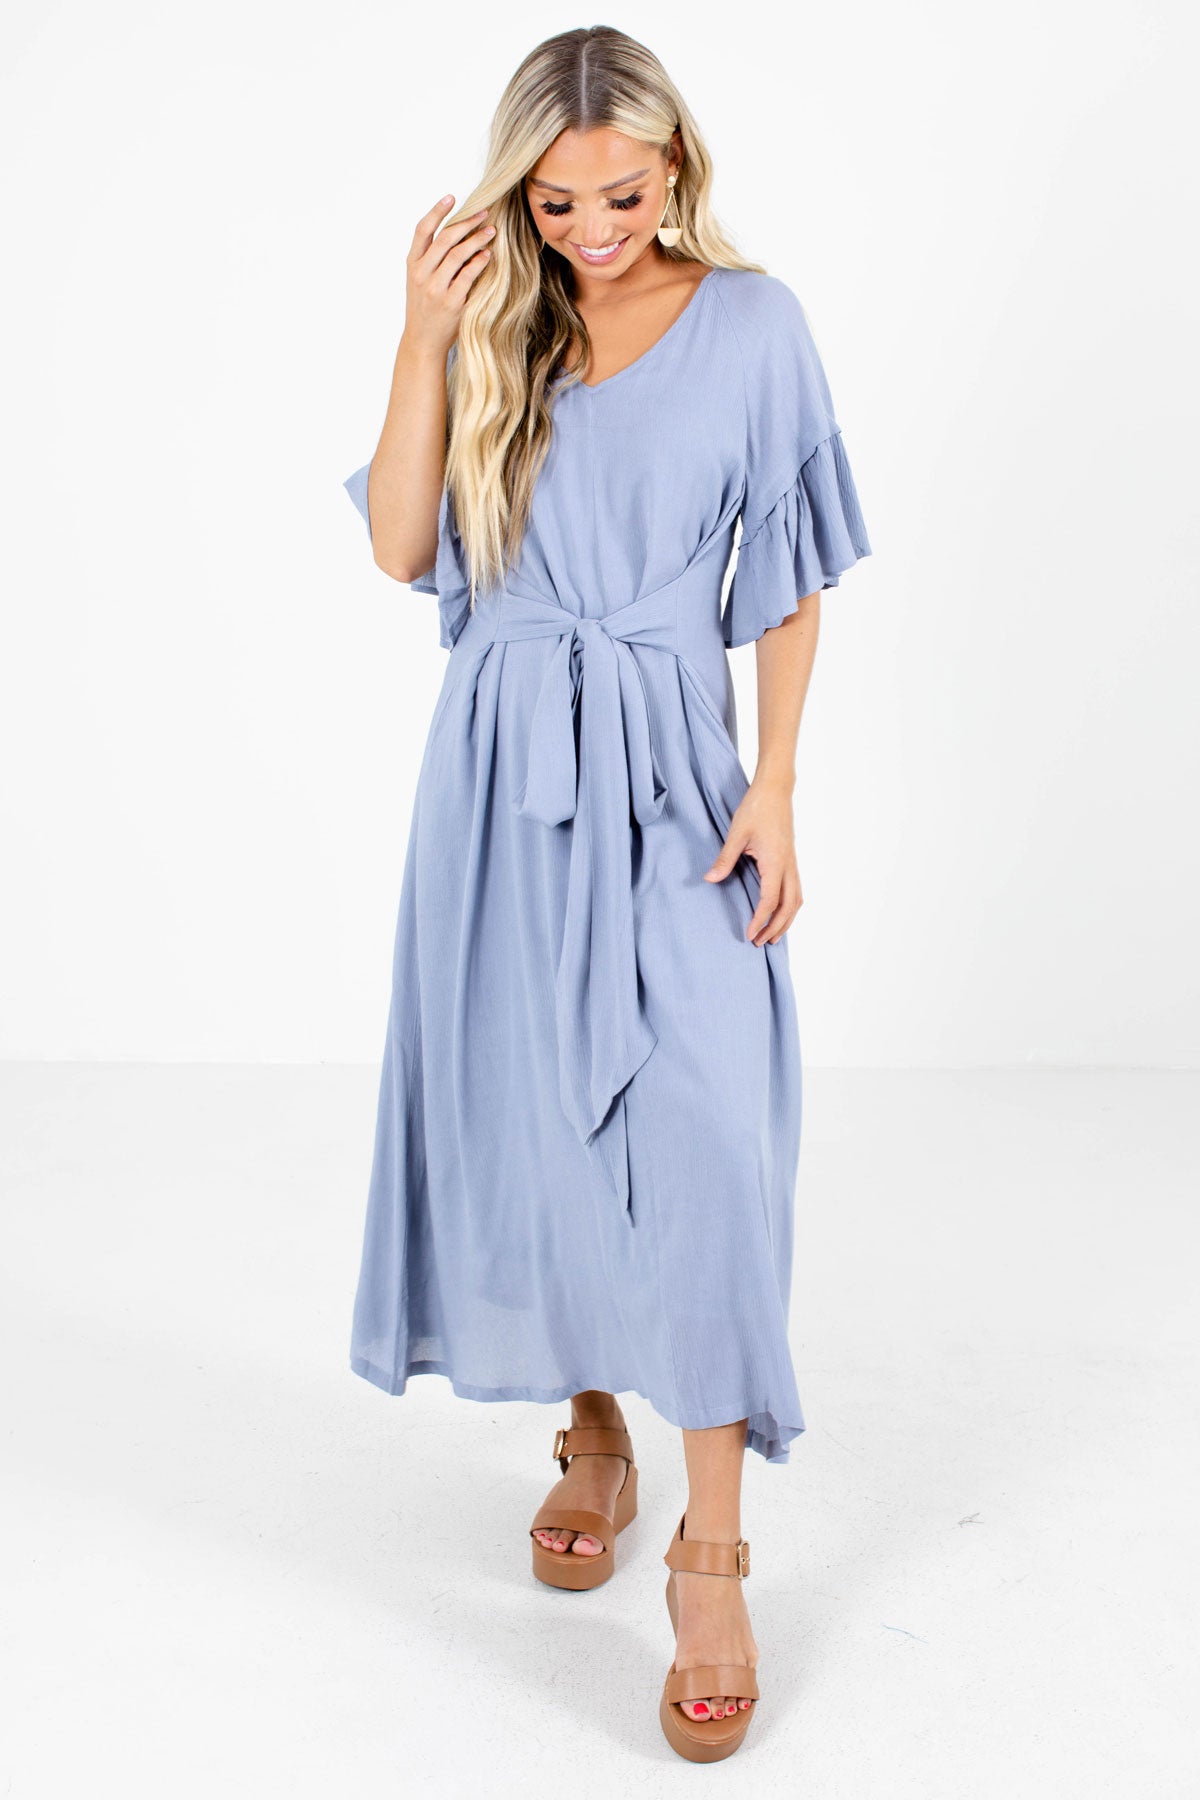 Blue Flowy Silhouette Boutique Maxi Dresses for Women